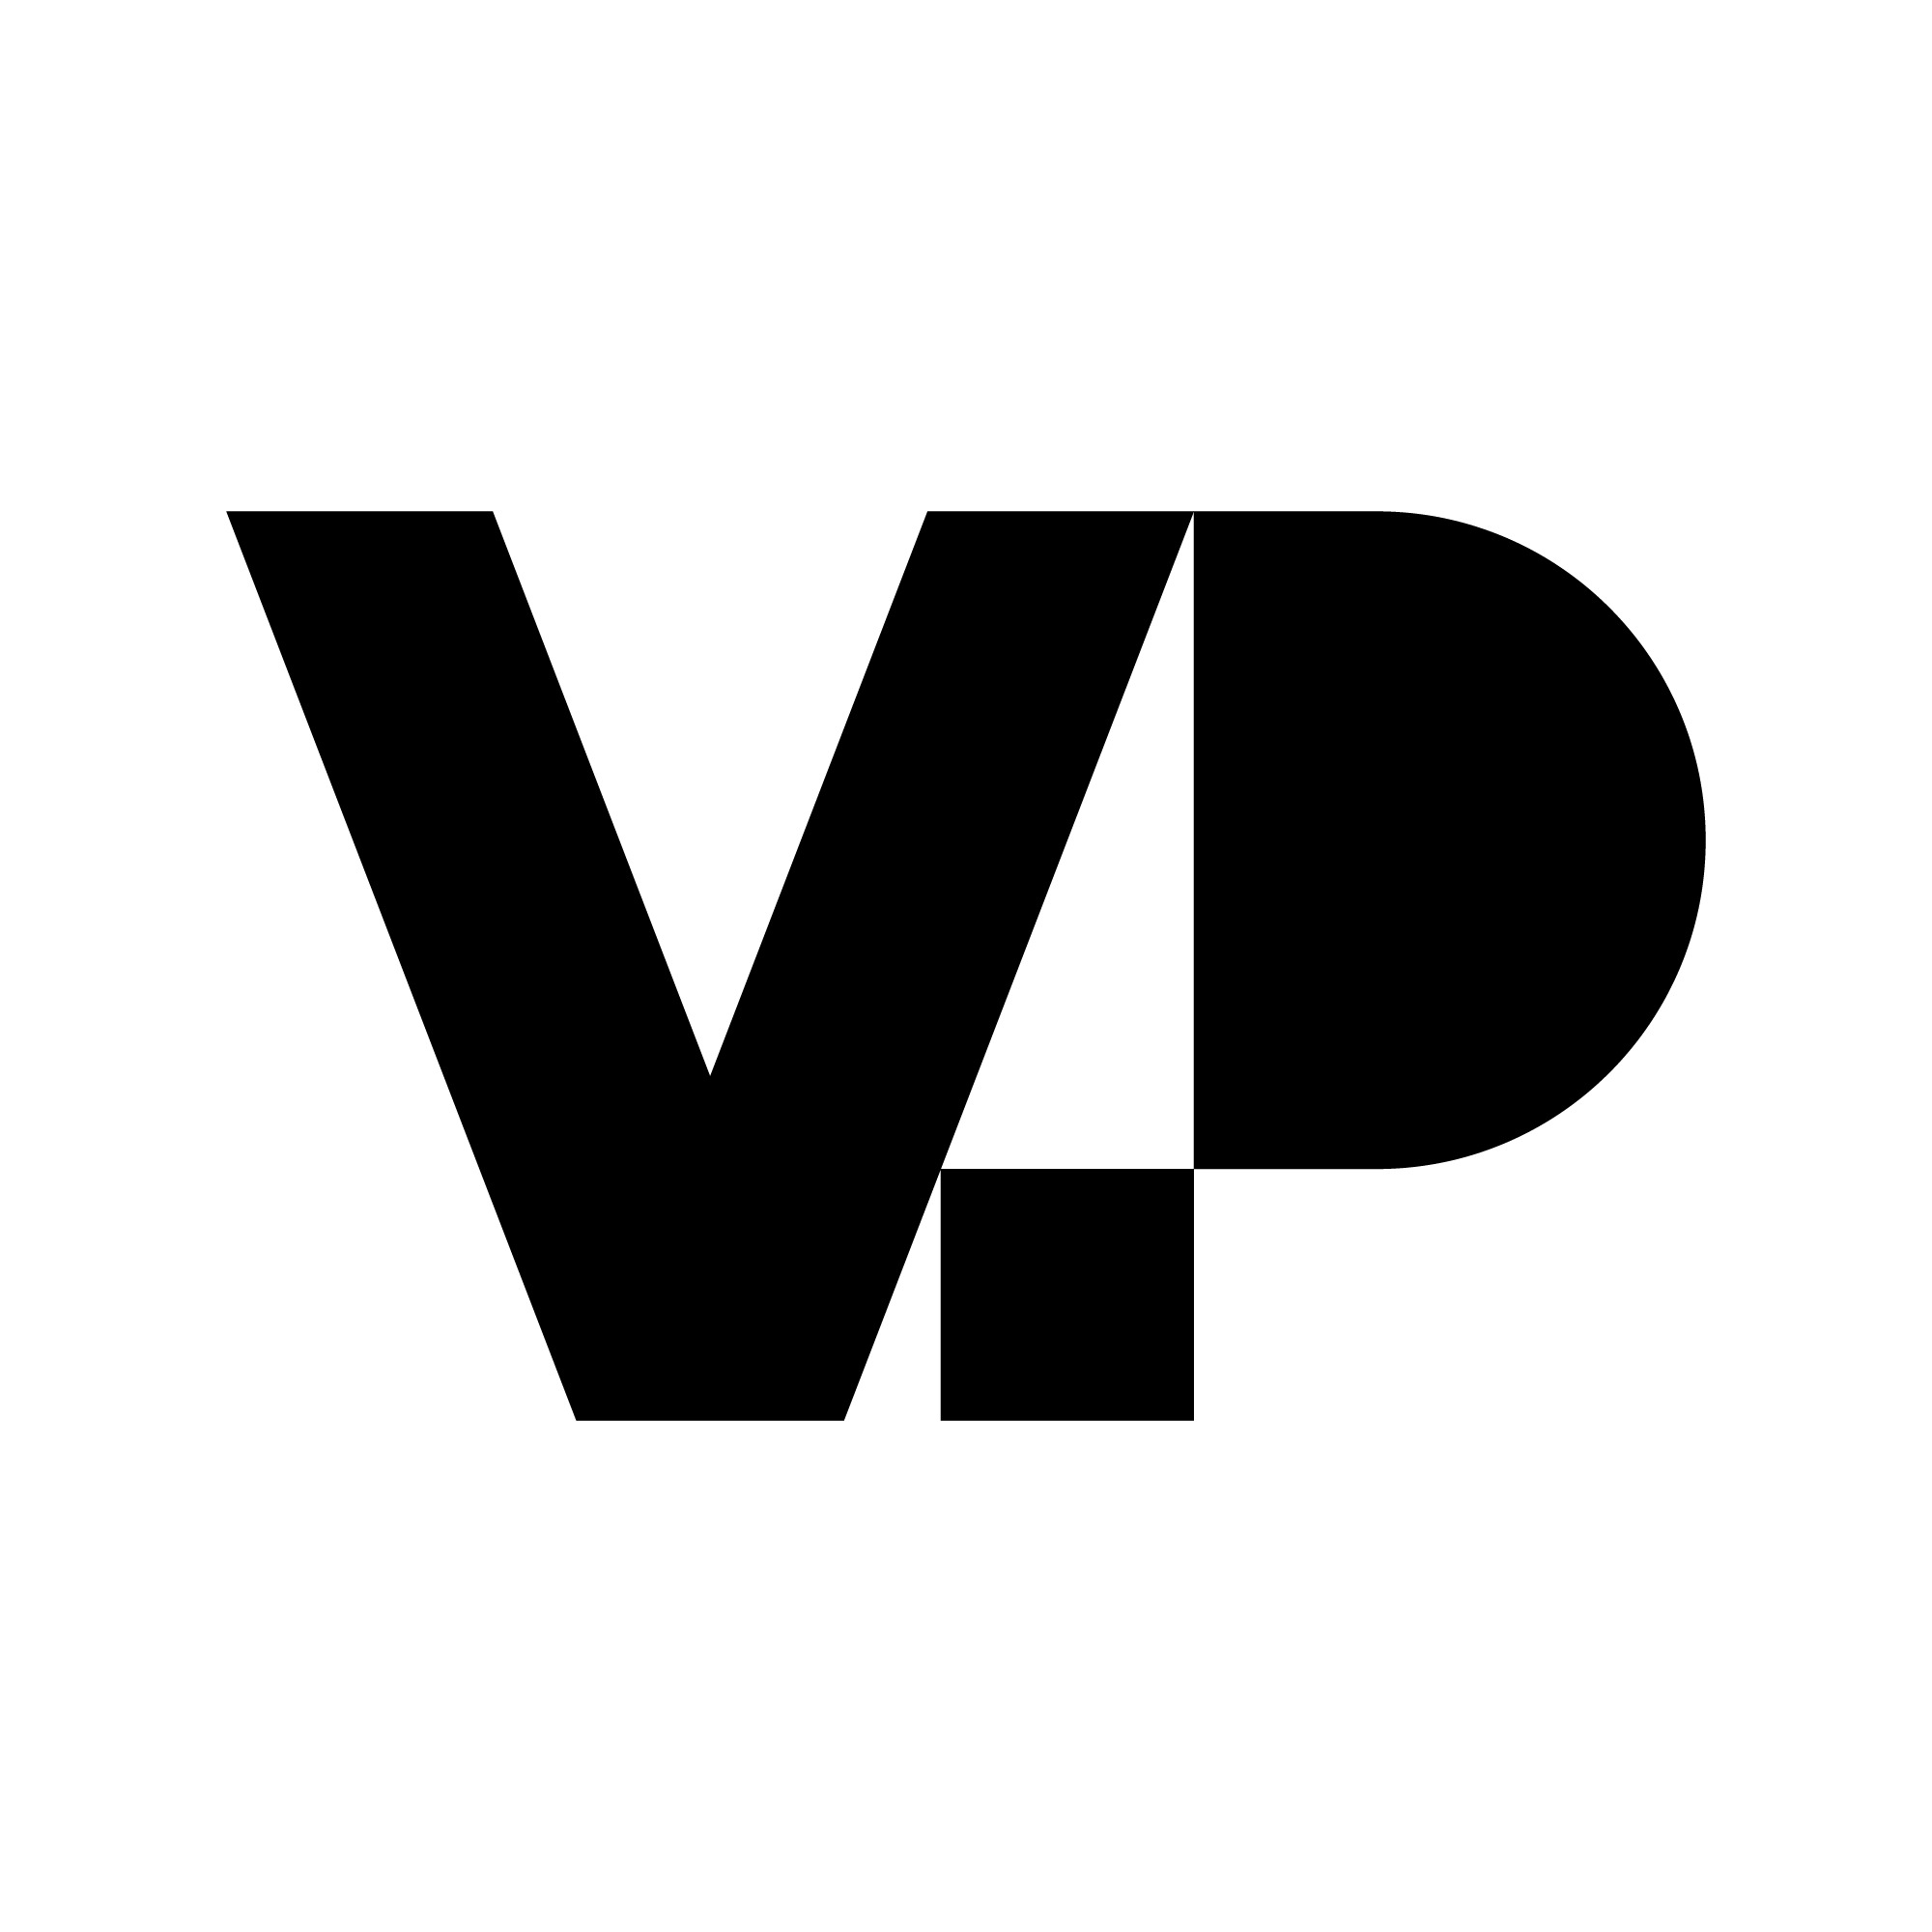 Valopilkku logo